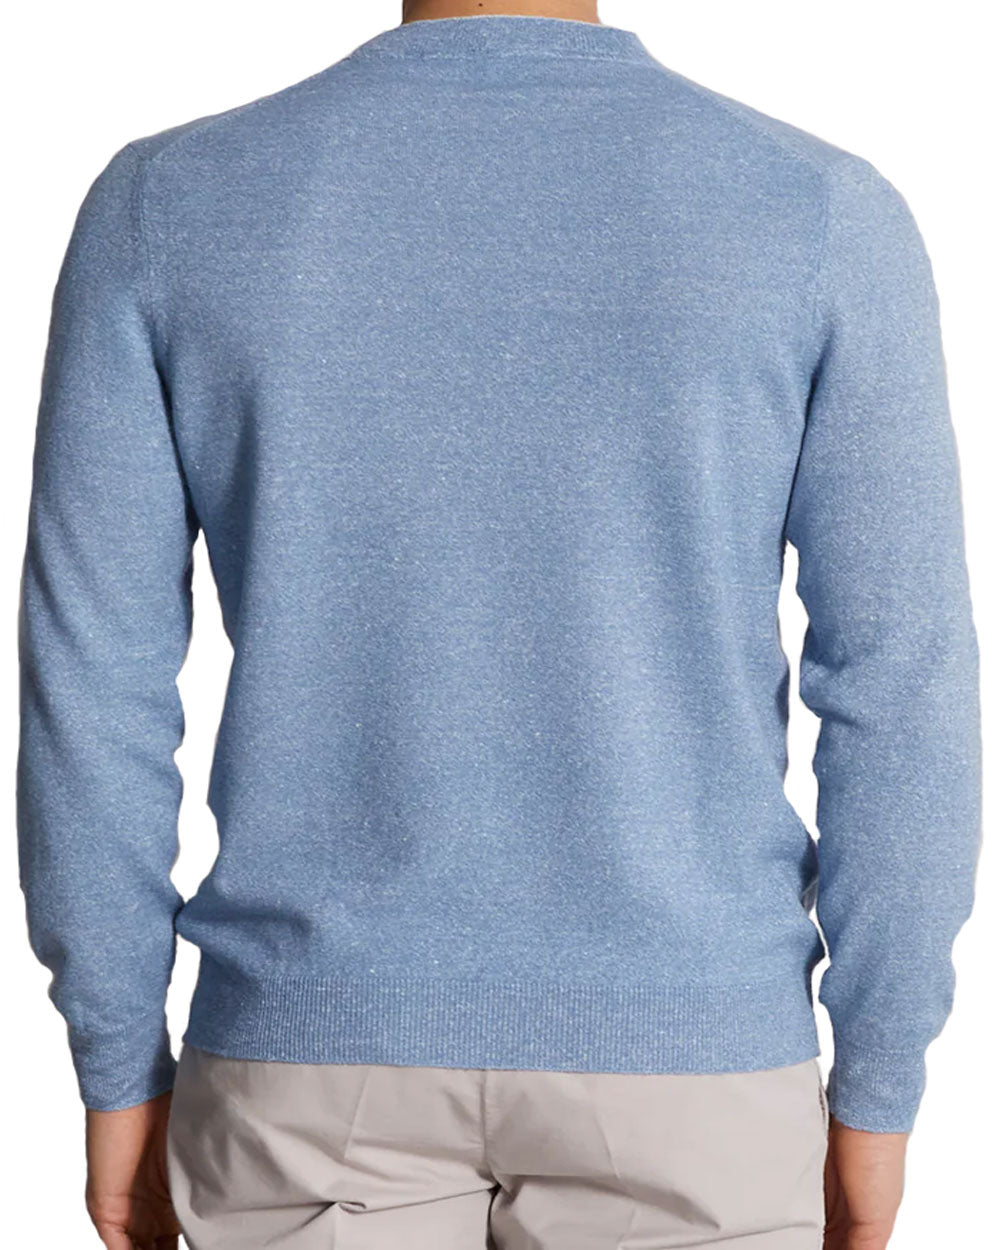 Blue Bicolor Sweater